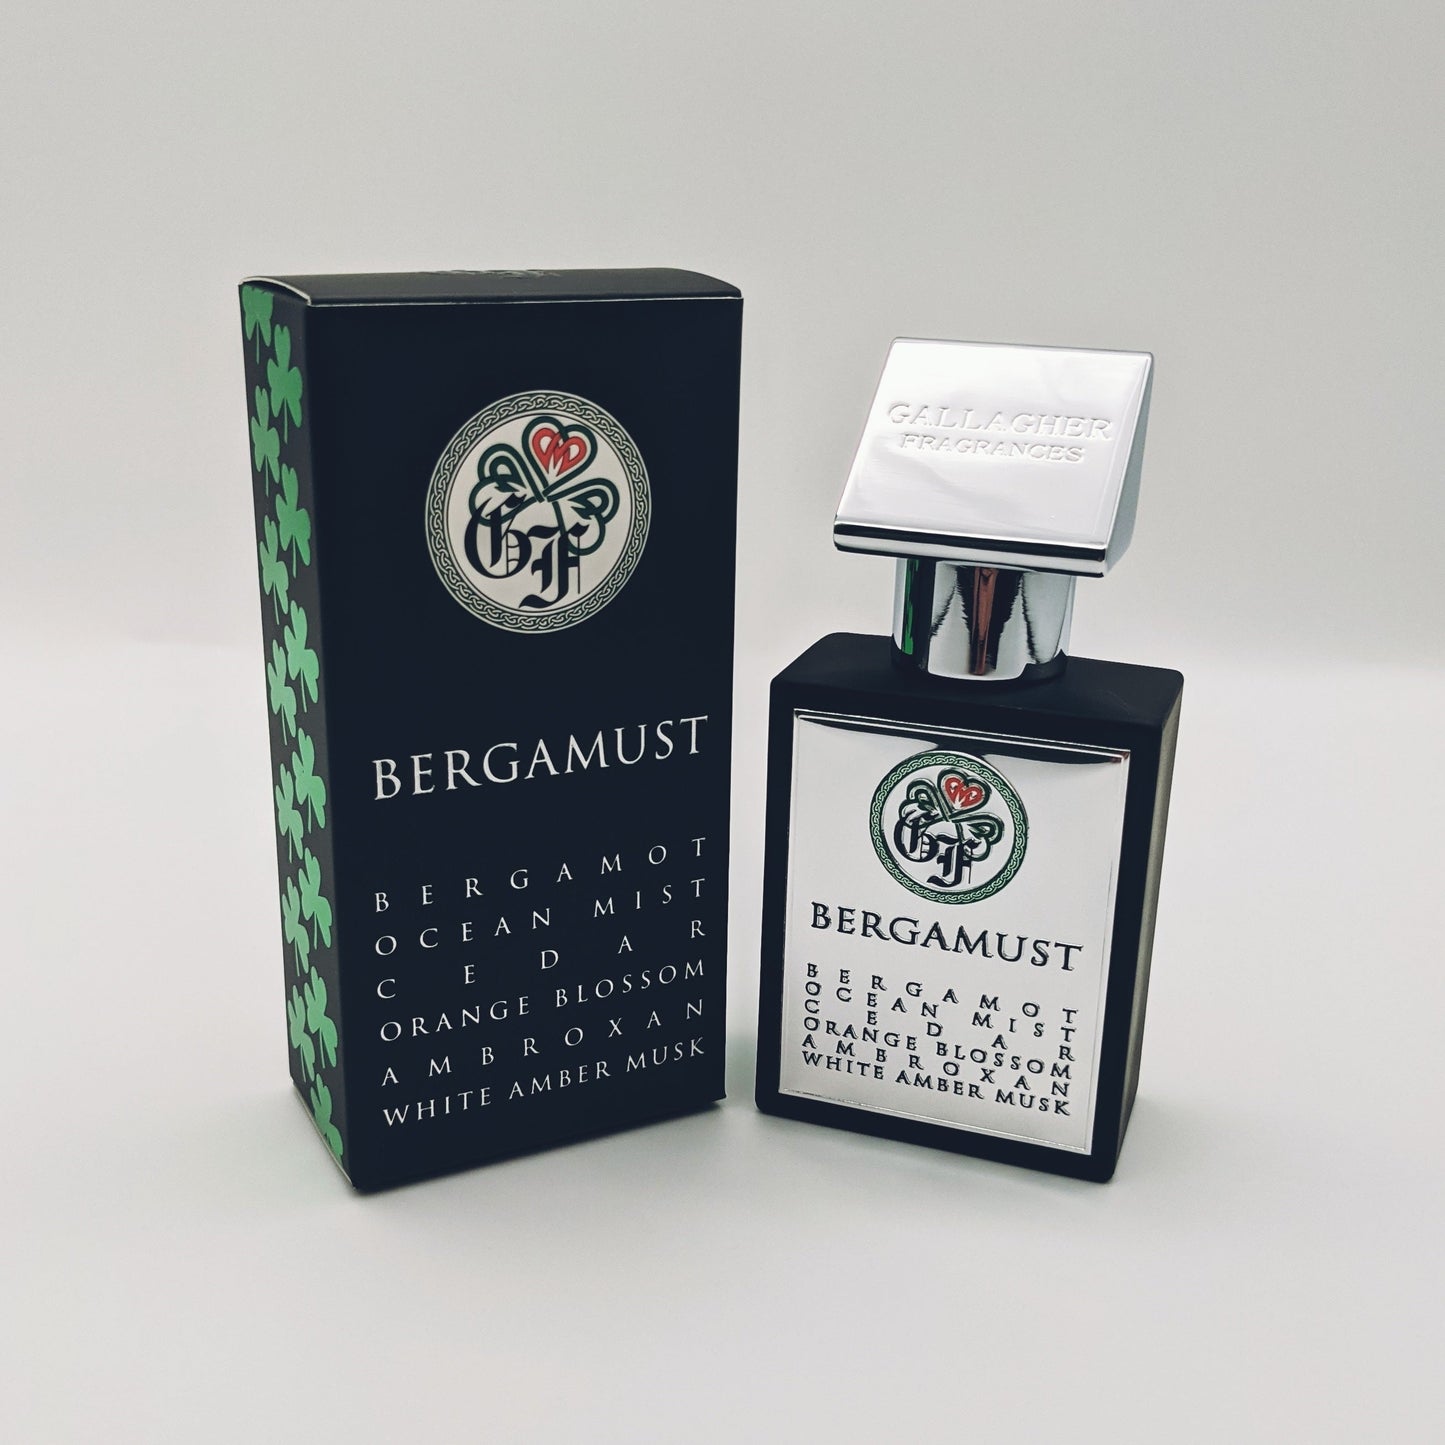 Bergamust - Bergamot, Orange Blossom, Aquatic Notes, Cedar